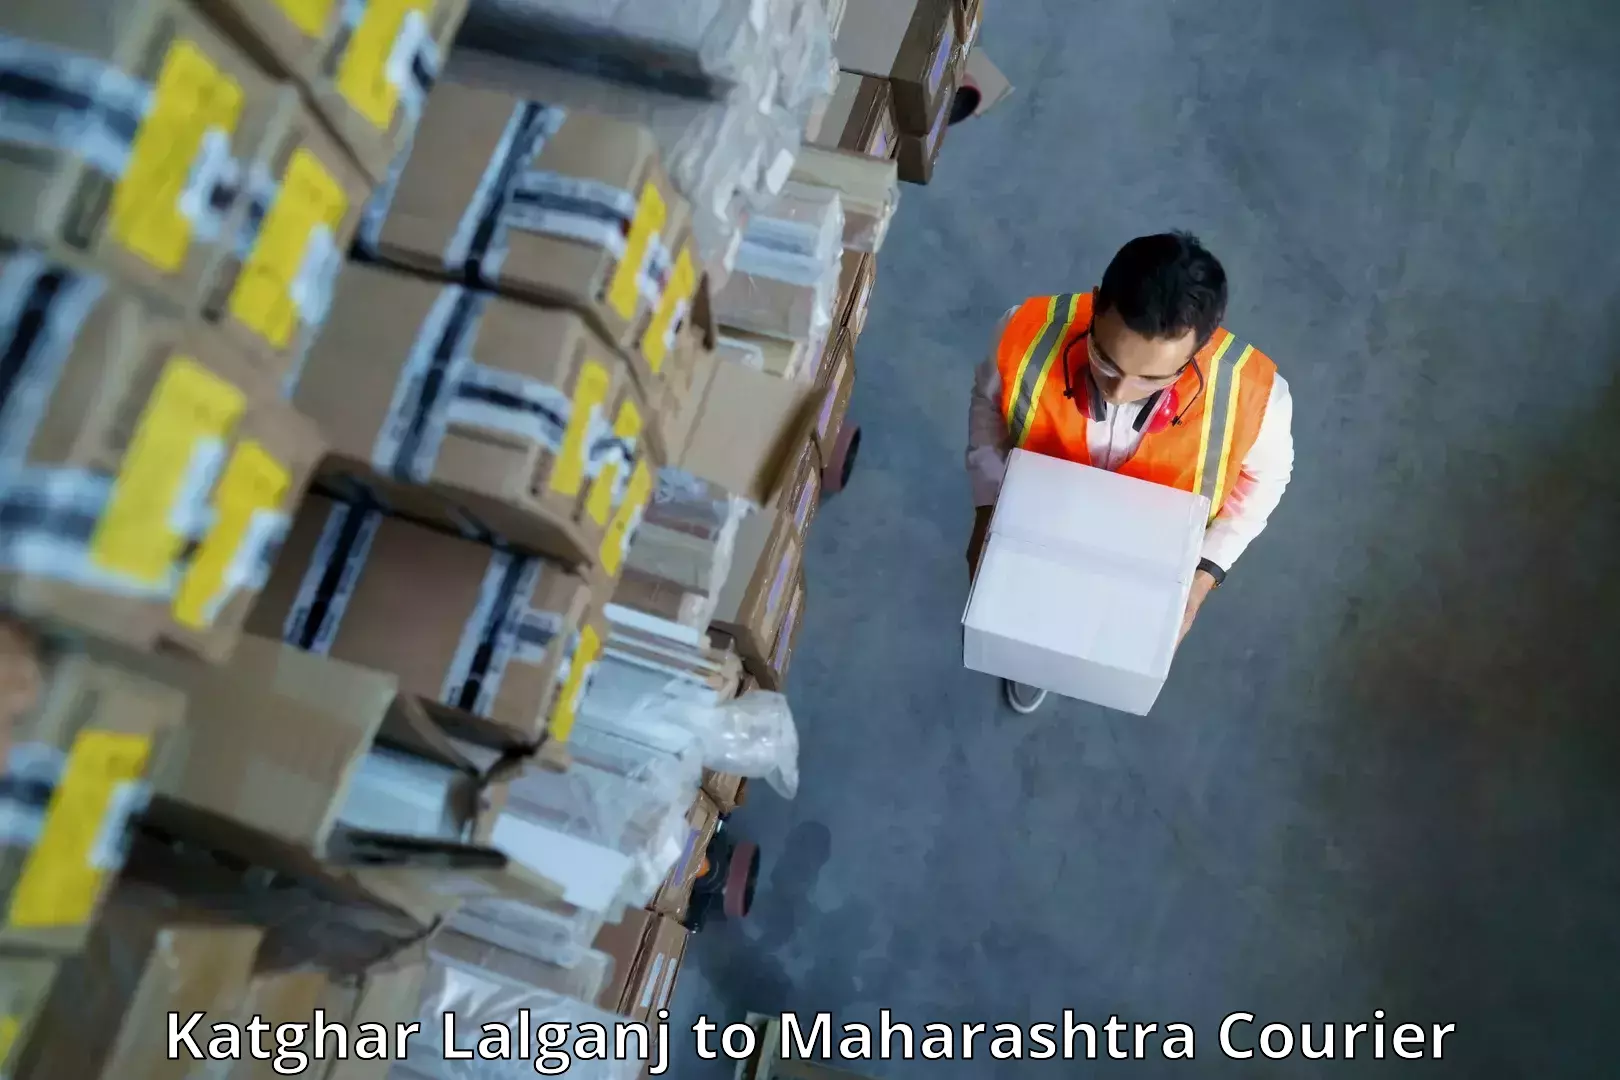 Ground shipping in Katghar Lalganj to Dindori Nashik